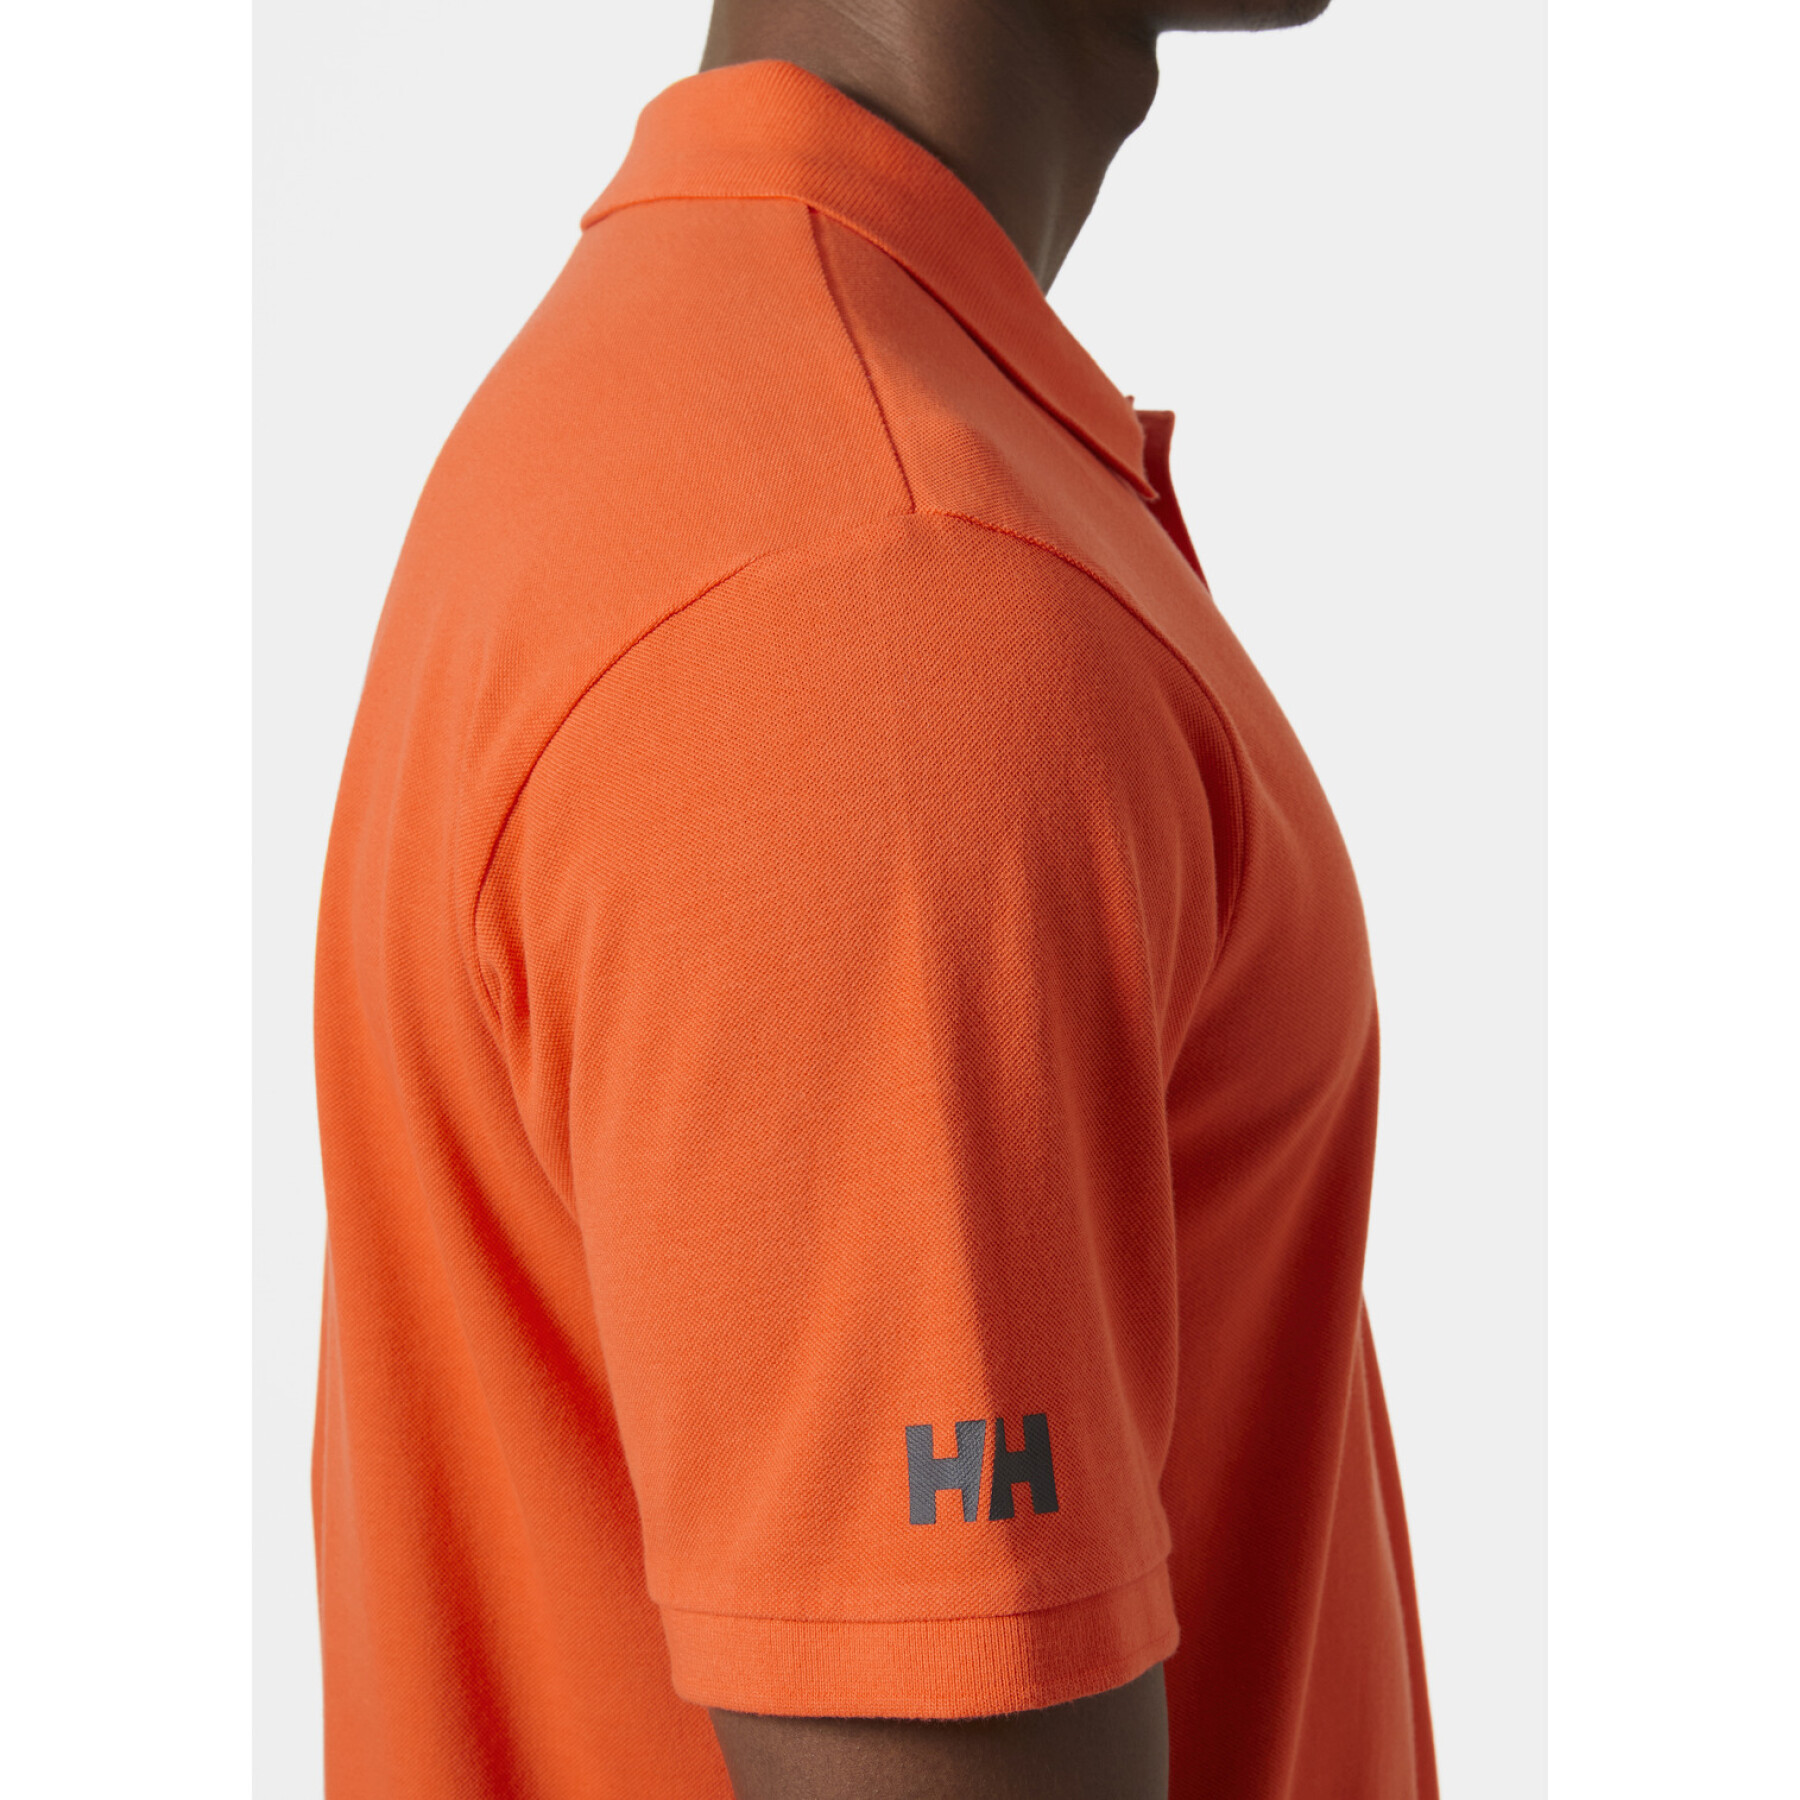 Polo-Shirt Helly Hansen Koster